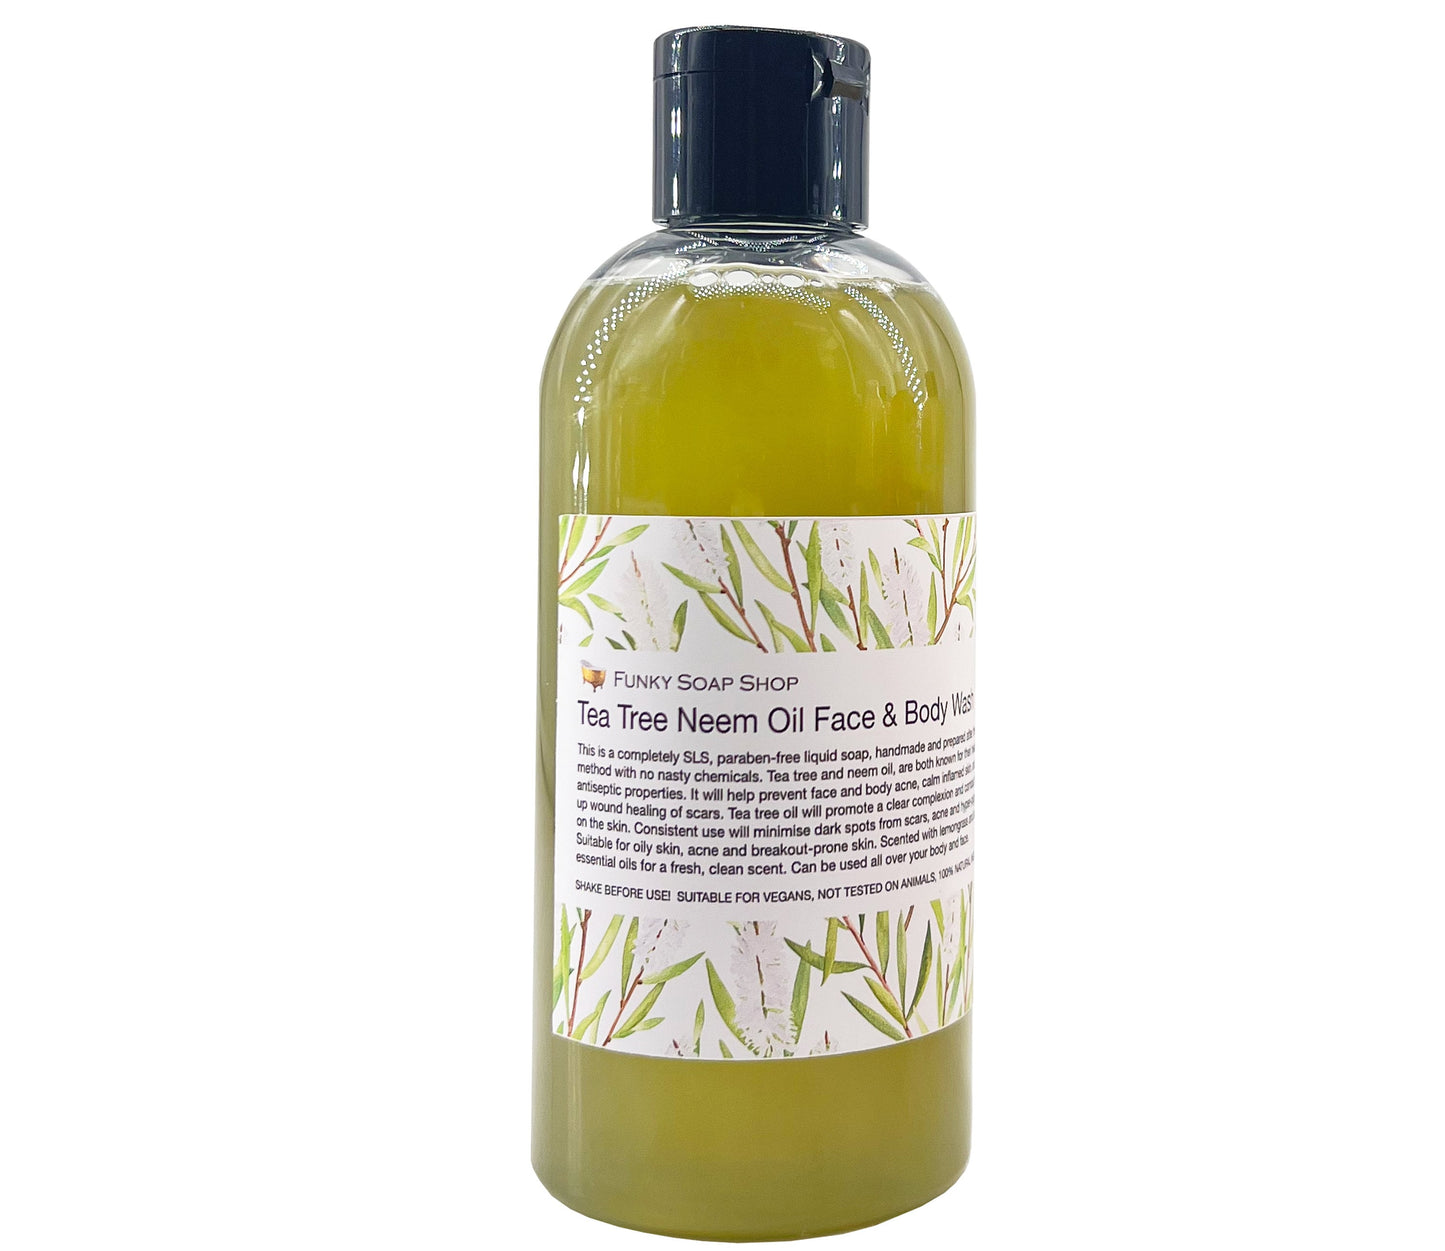 Tea Tree Neem Oil Face & Body Wash - Funky Soap Shop